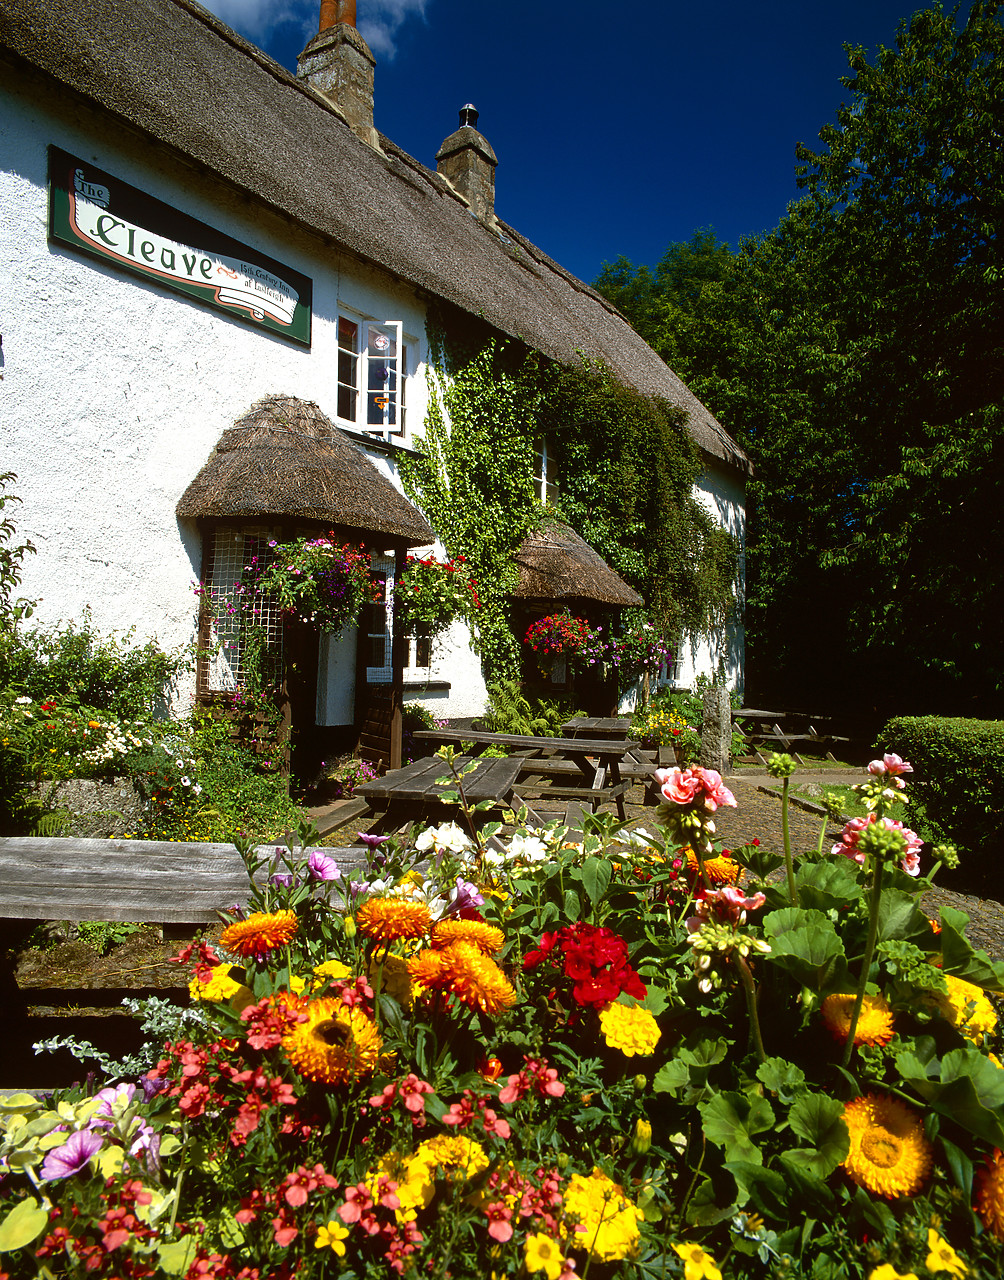 #020641-2 - The Cleave Inn, Lustleigh, Devon, England